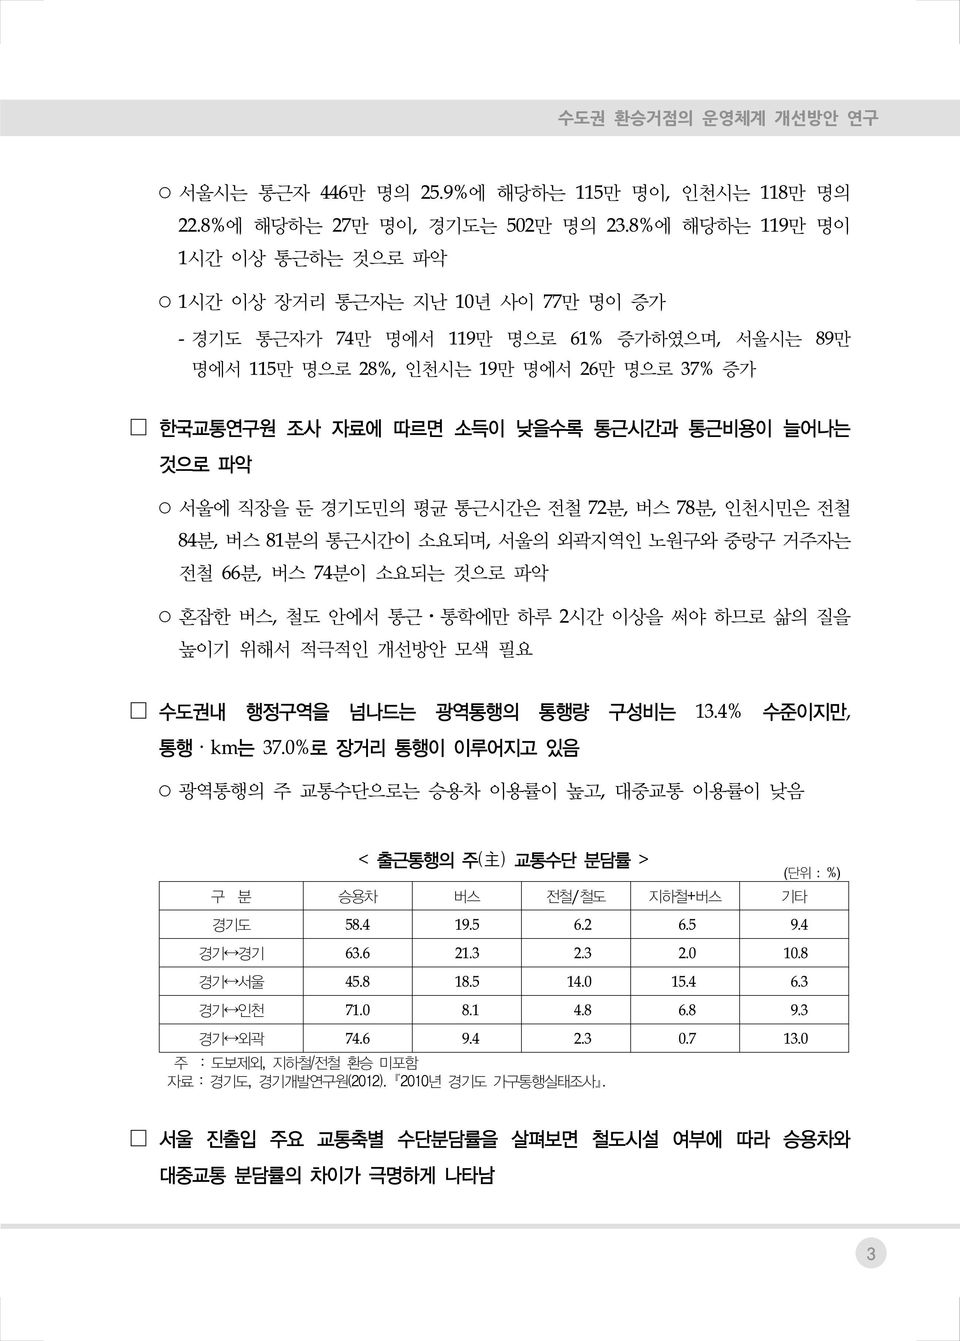 통근시간과 통근비용이 늘어나는 것으로 파악 서울에 직장을 둔 경기도민의 평균 통근시간은 전철 72분, 버스 78분, 인천시민은 전철 84분, 버스 81분의 통근시간이 소요되며, 서울의 외곽지역인 노원구와 중랑구 거주자는 전철 66분, 버스 74분이 소요되는 것으로 파악 혼잡한 버스, 철도 안에서 통근 통학에만 하루 2시간 이상을 써야 하므로 삶의 질을